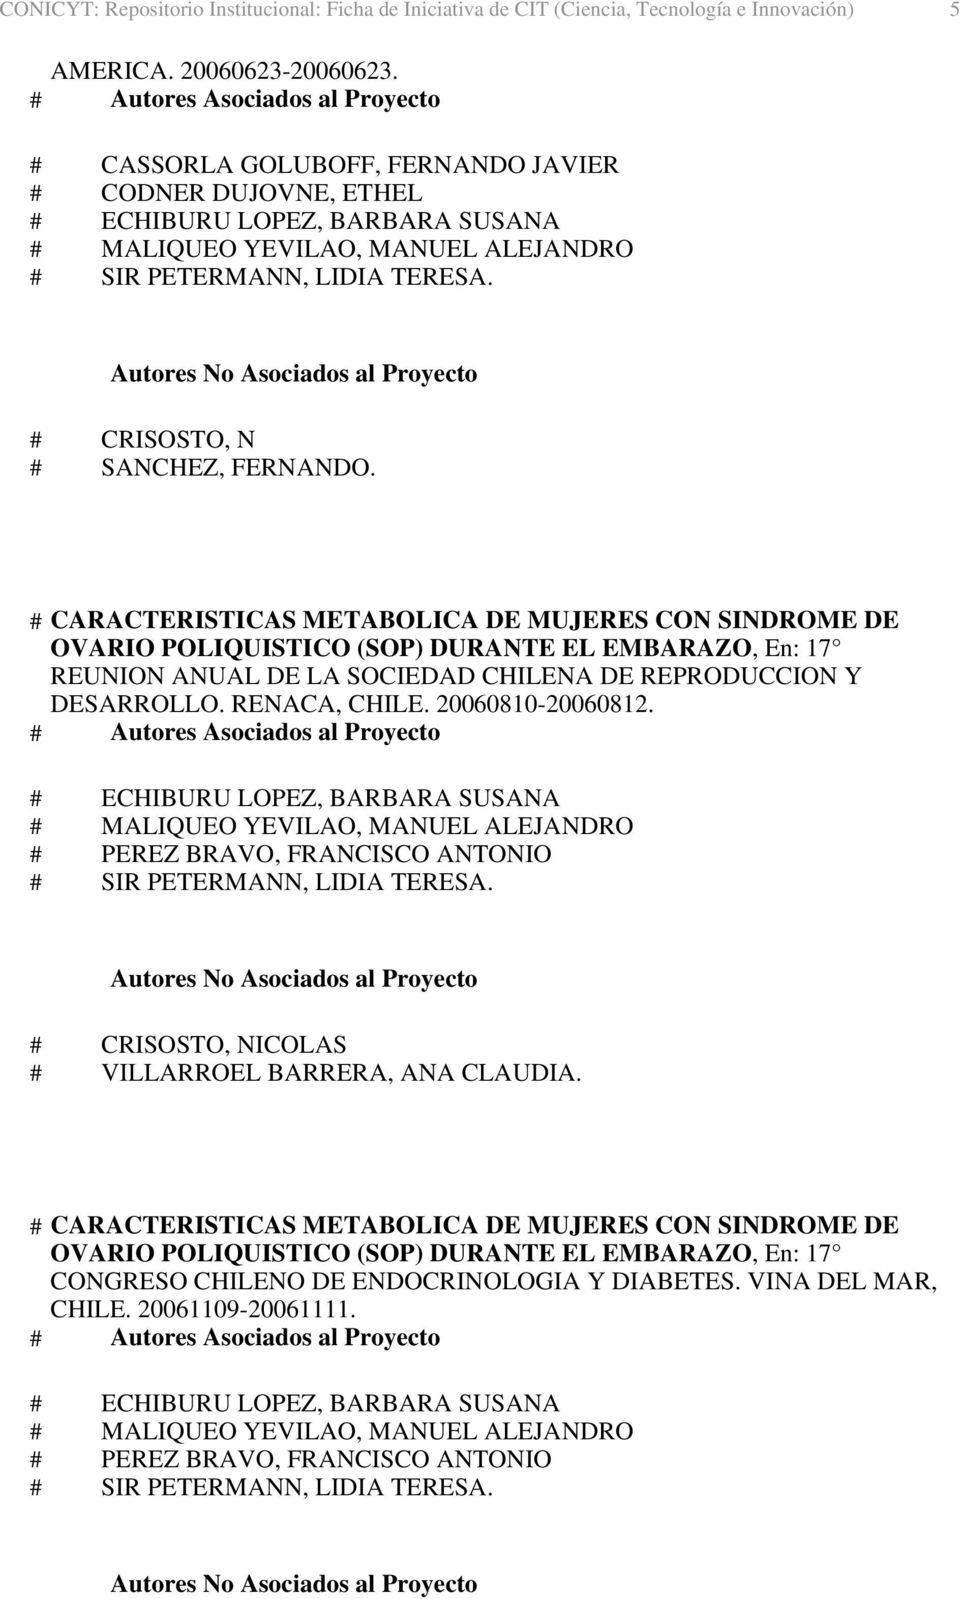 # CARACTERISTICAS METABOLICA DE MUJERES CON SINDROME DE OVARIO POLIQUISTICO (SOP) DURANTE EL EMBARAZO, En: 17 REUNION ANUAL DE LA SOCIEDAD CHILENA DE